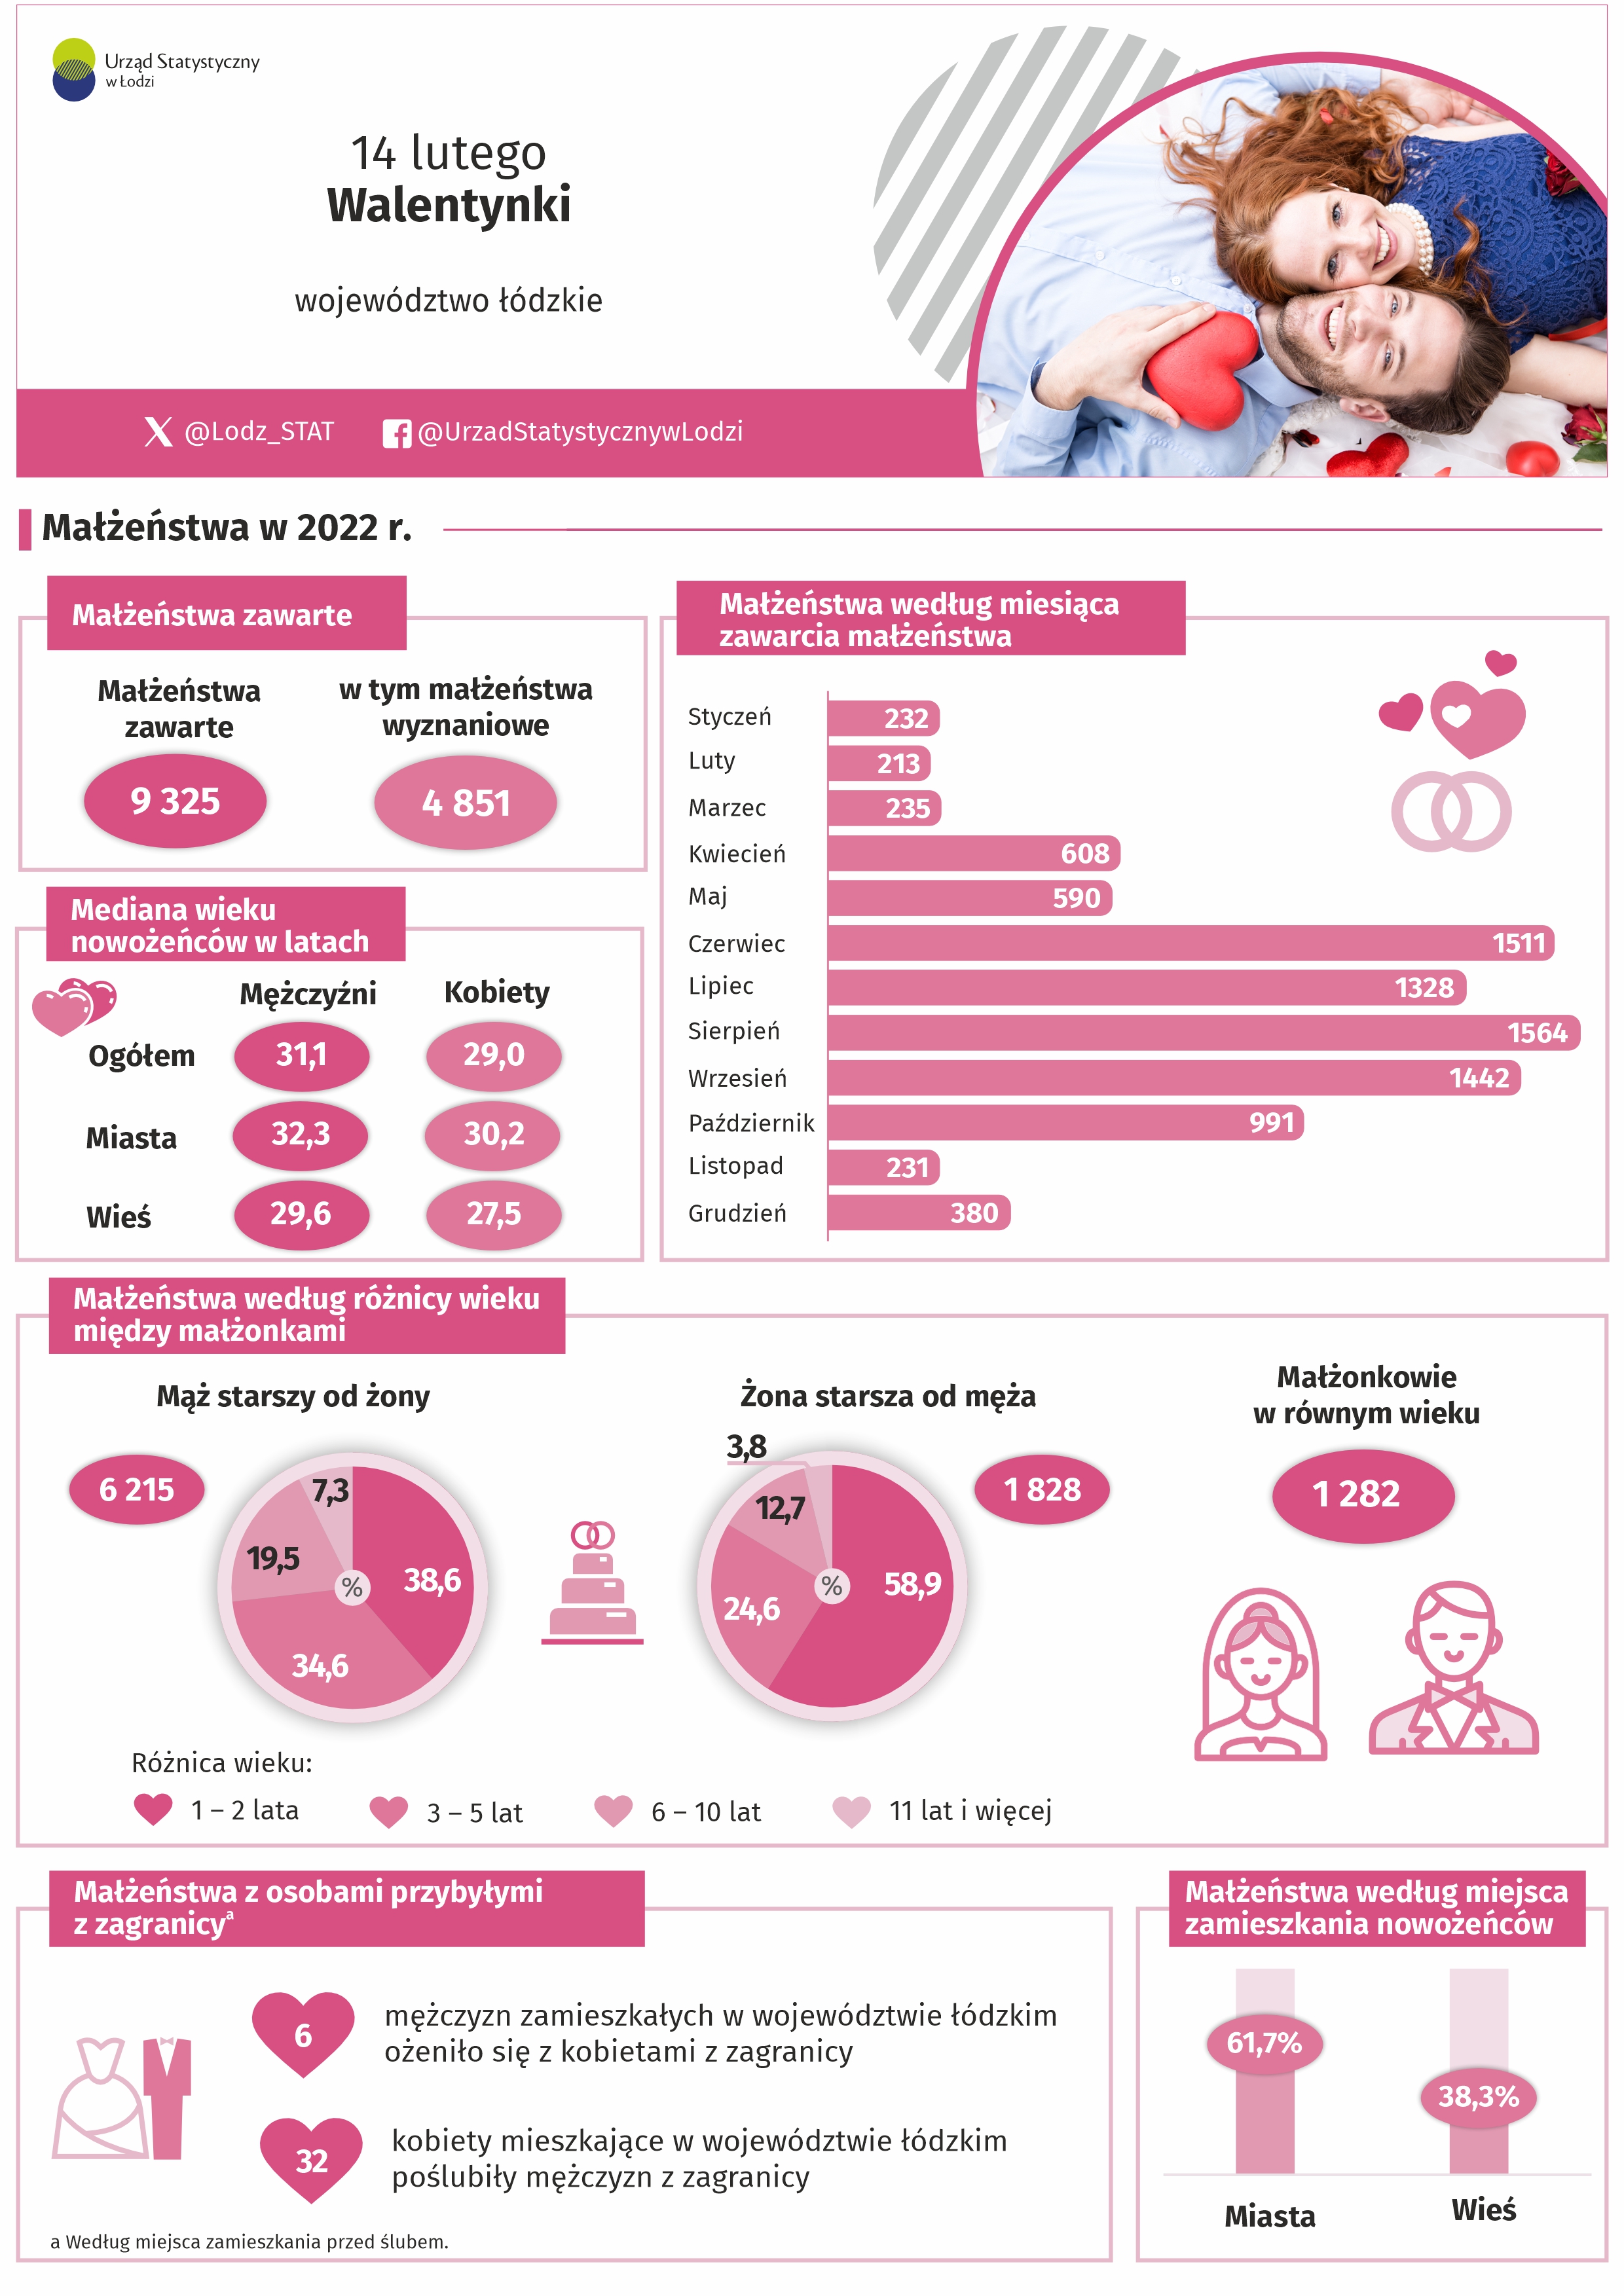 Infografika 2023 z okazji dnia 14 lutego - Walentynek przedstawia dane dotyczące małżeństw w 2022 r.Dane w pliku excel